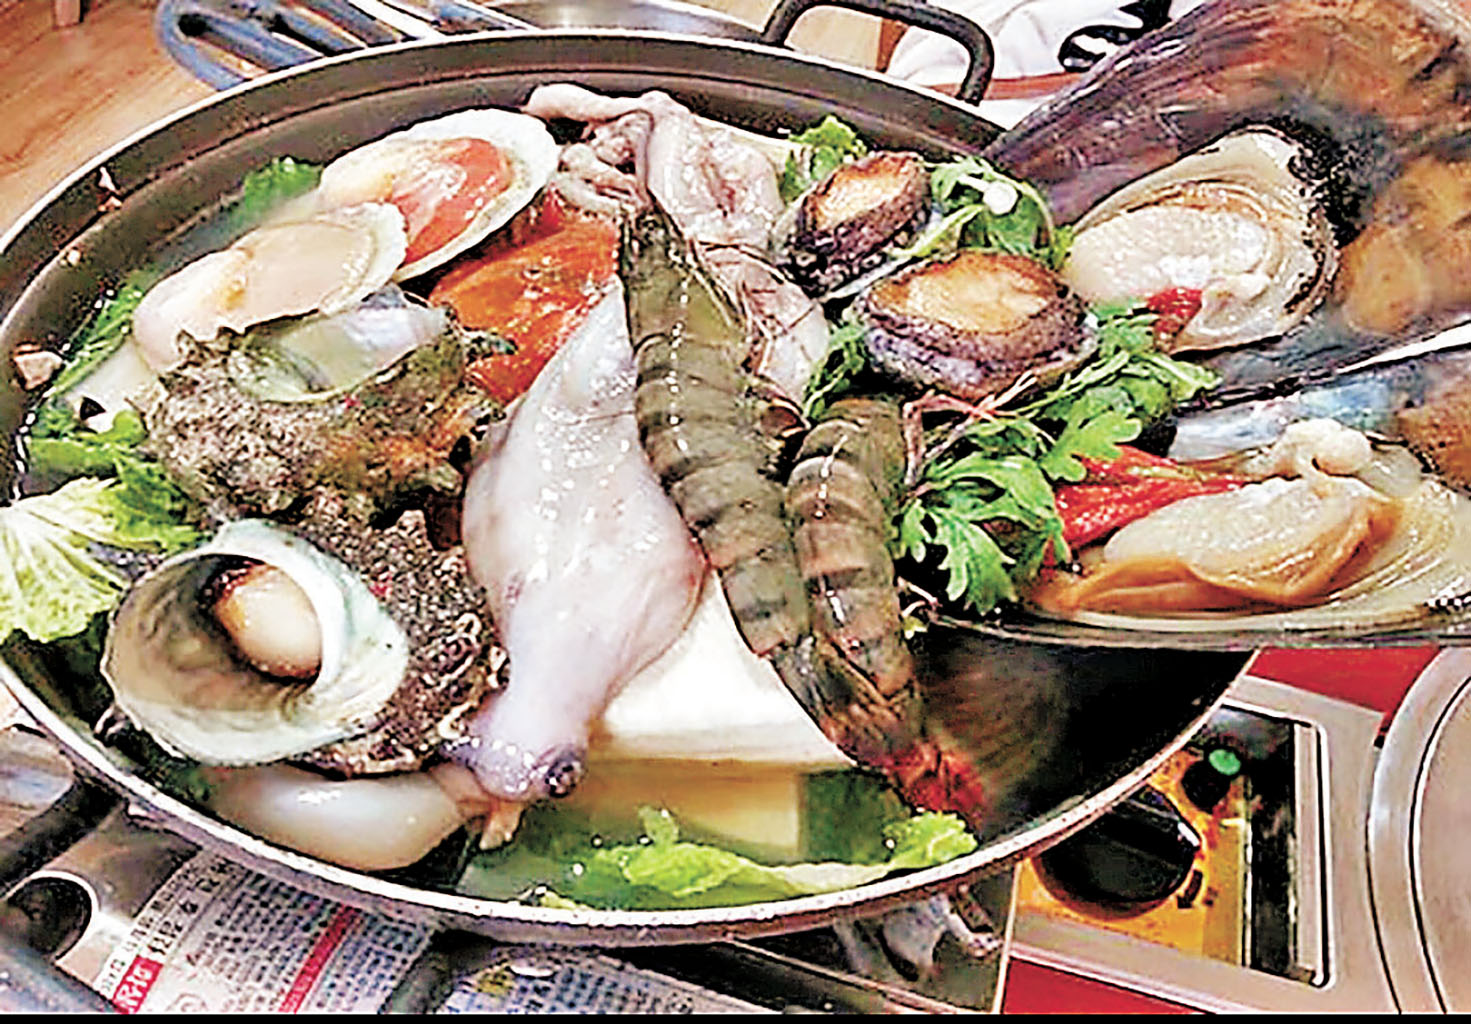 ■「濟州海男」的海鮮鍋加入了鮑魚、貝殼和虎蝦等海鮮。